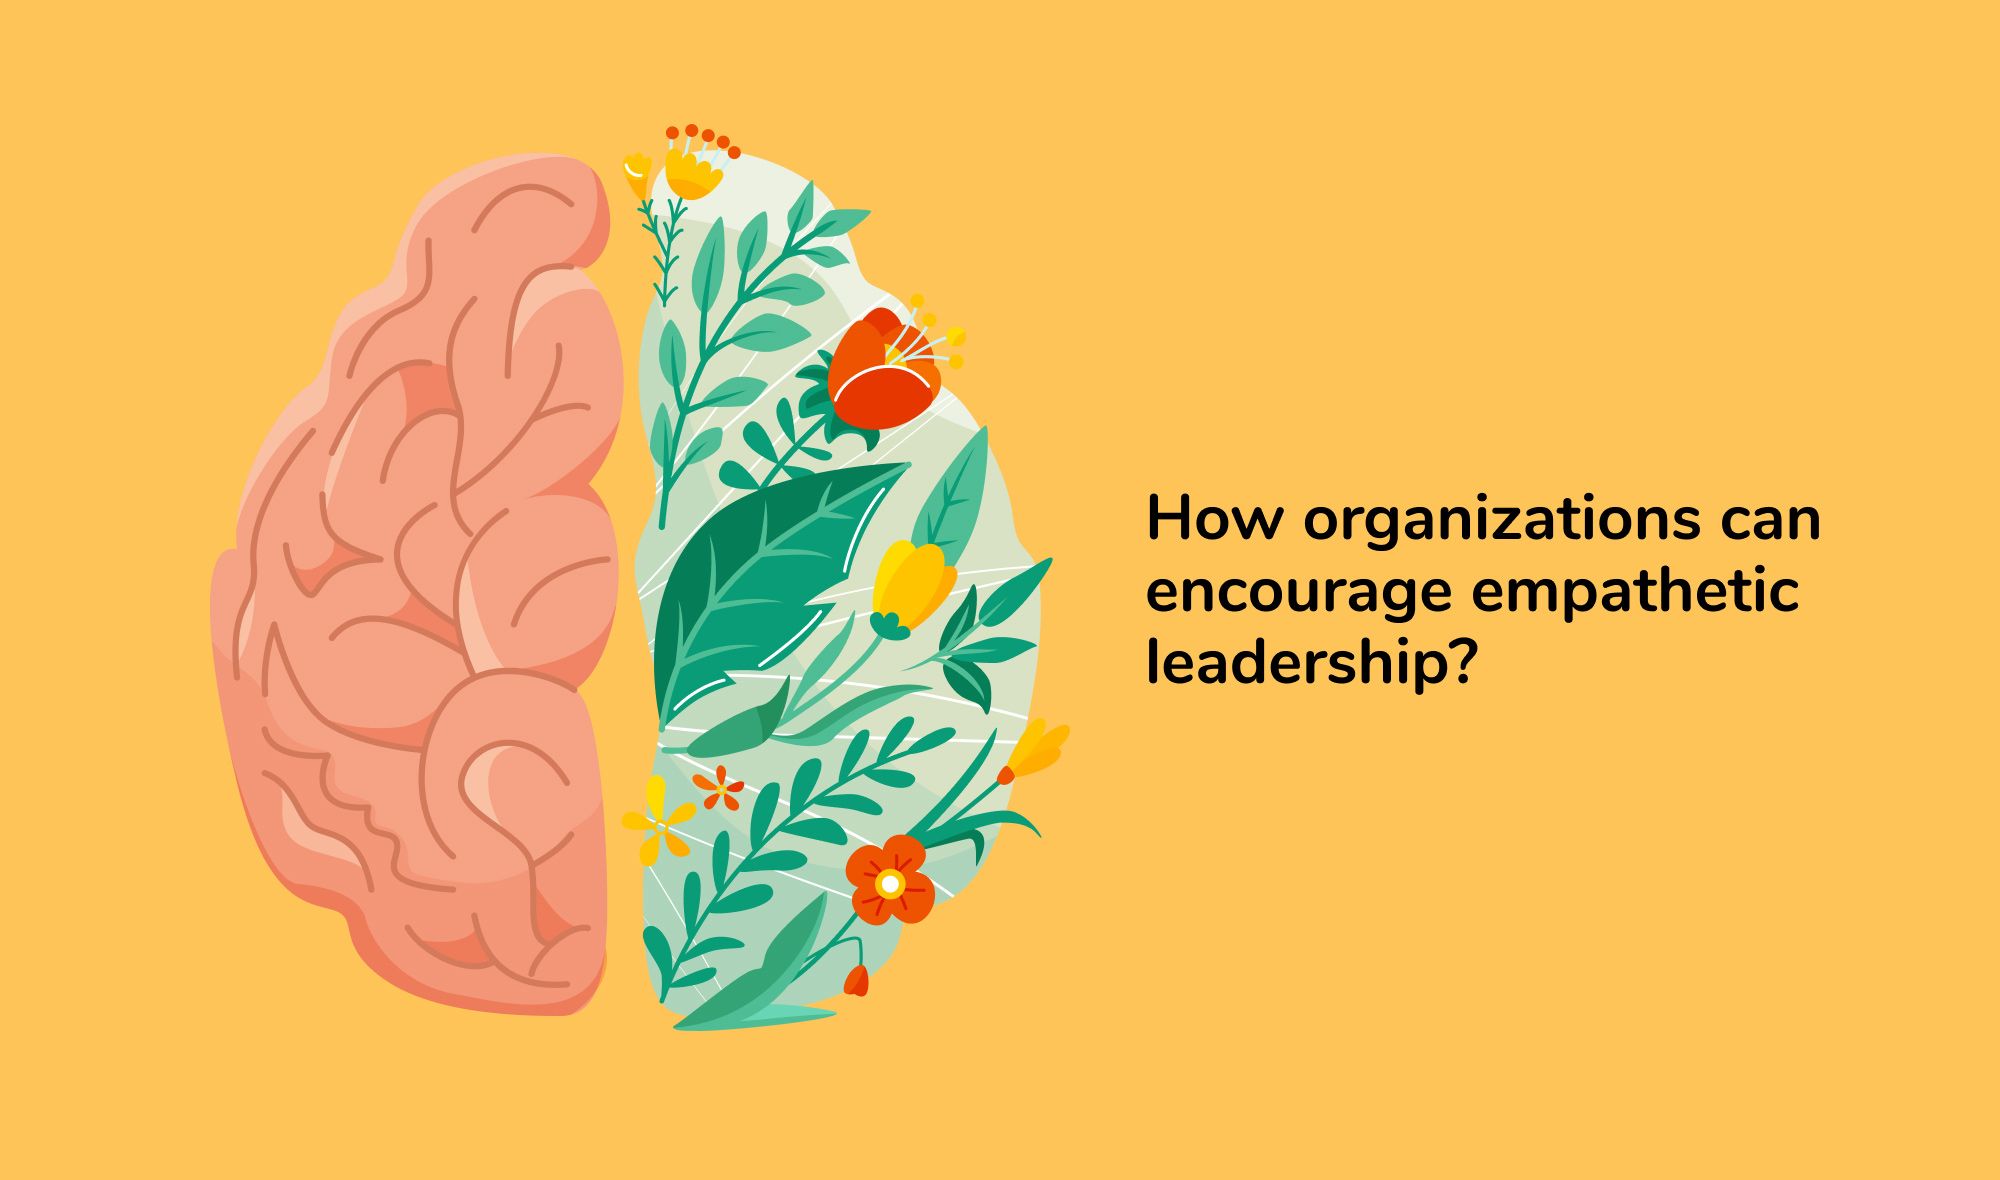 Empathetic leaders: How organizations can encourage empathetic leadership?